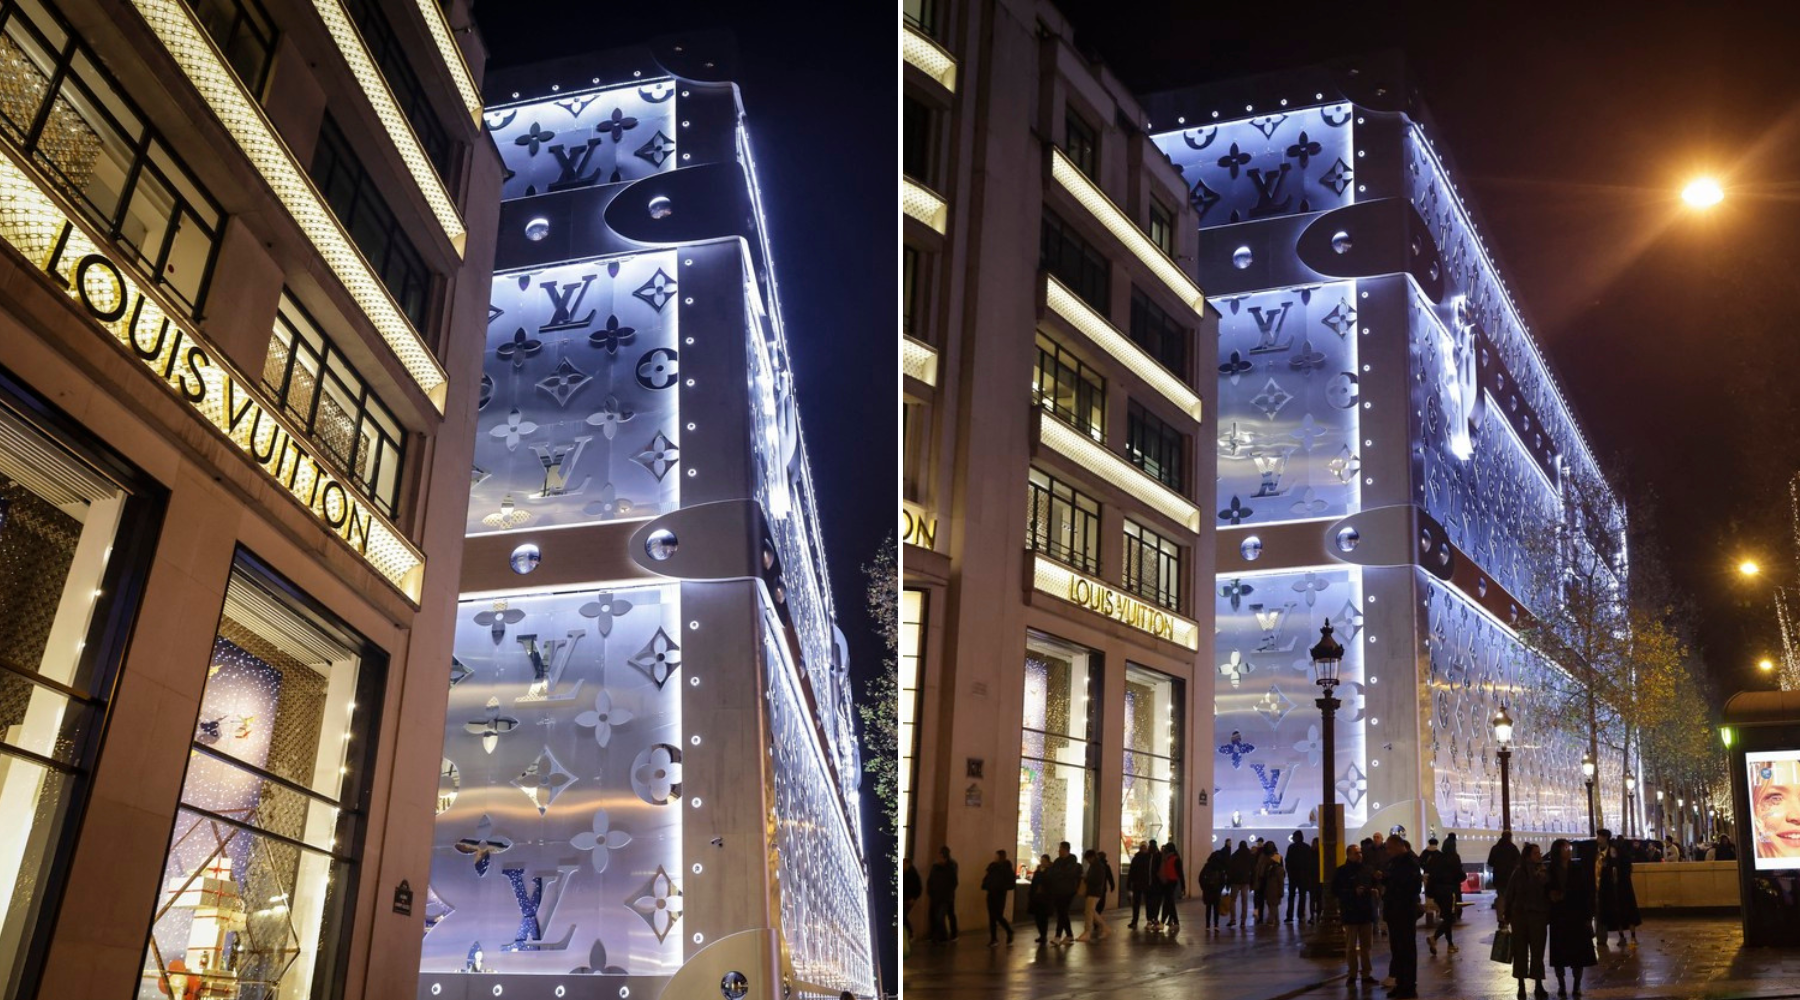 Louis Vuitton otvara vrata svog prvog hotela u Parizu u 2026. godini – ali mišljenja su već sada podeljena